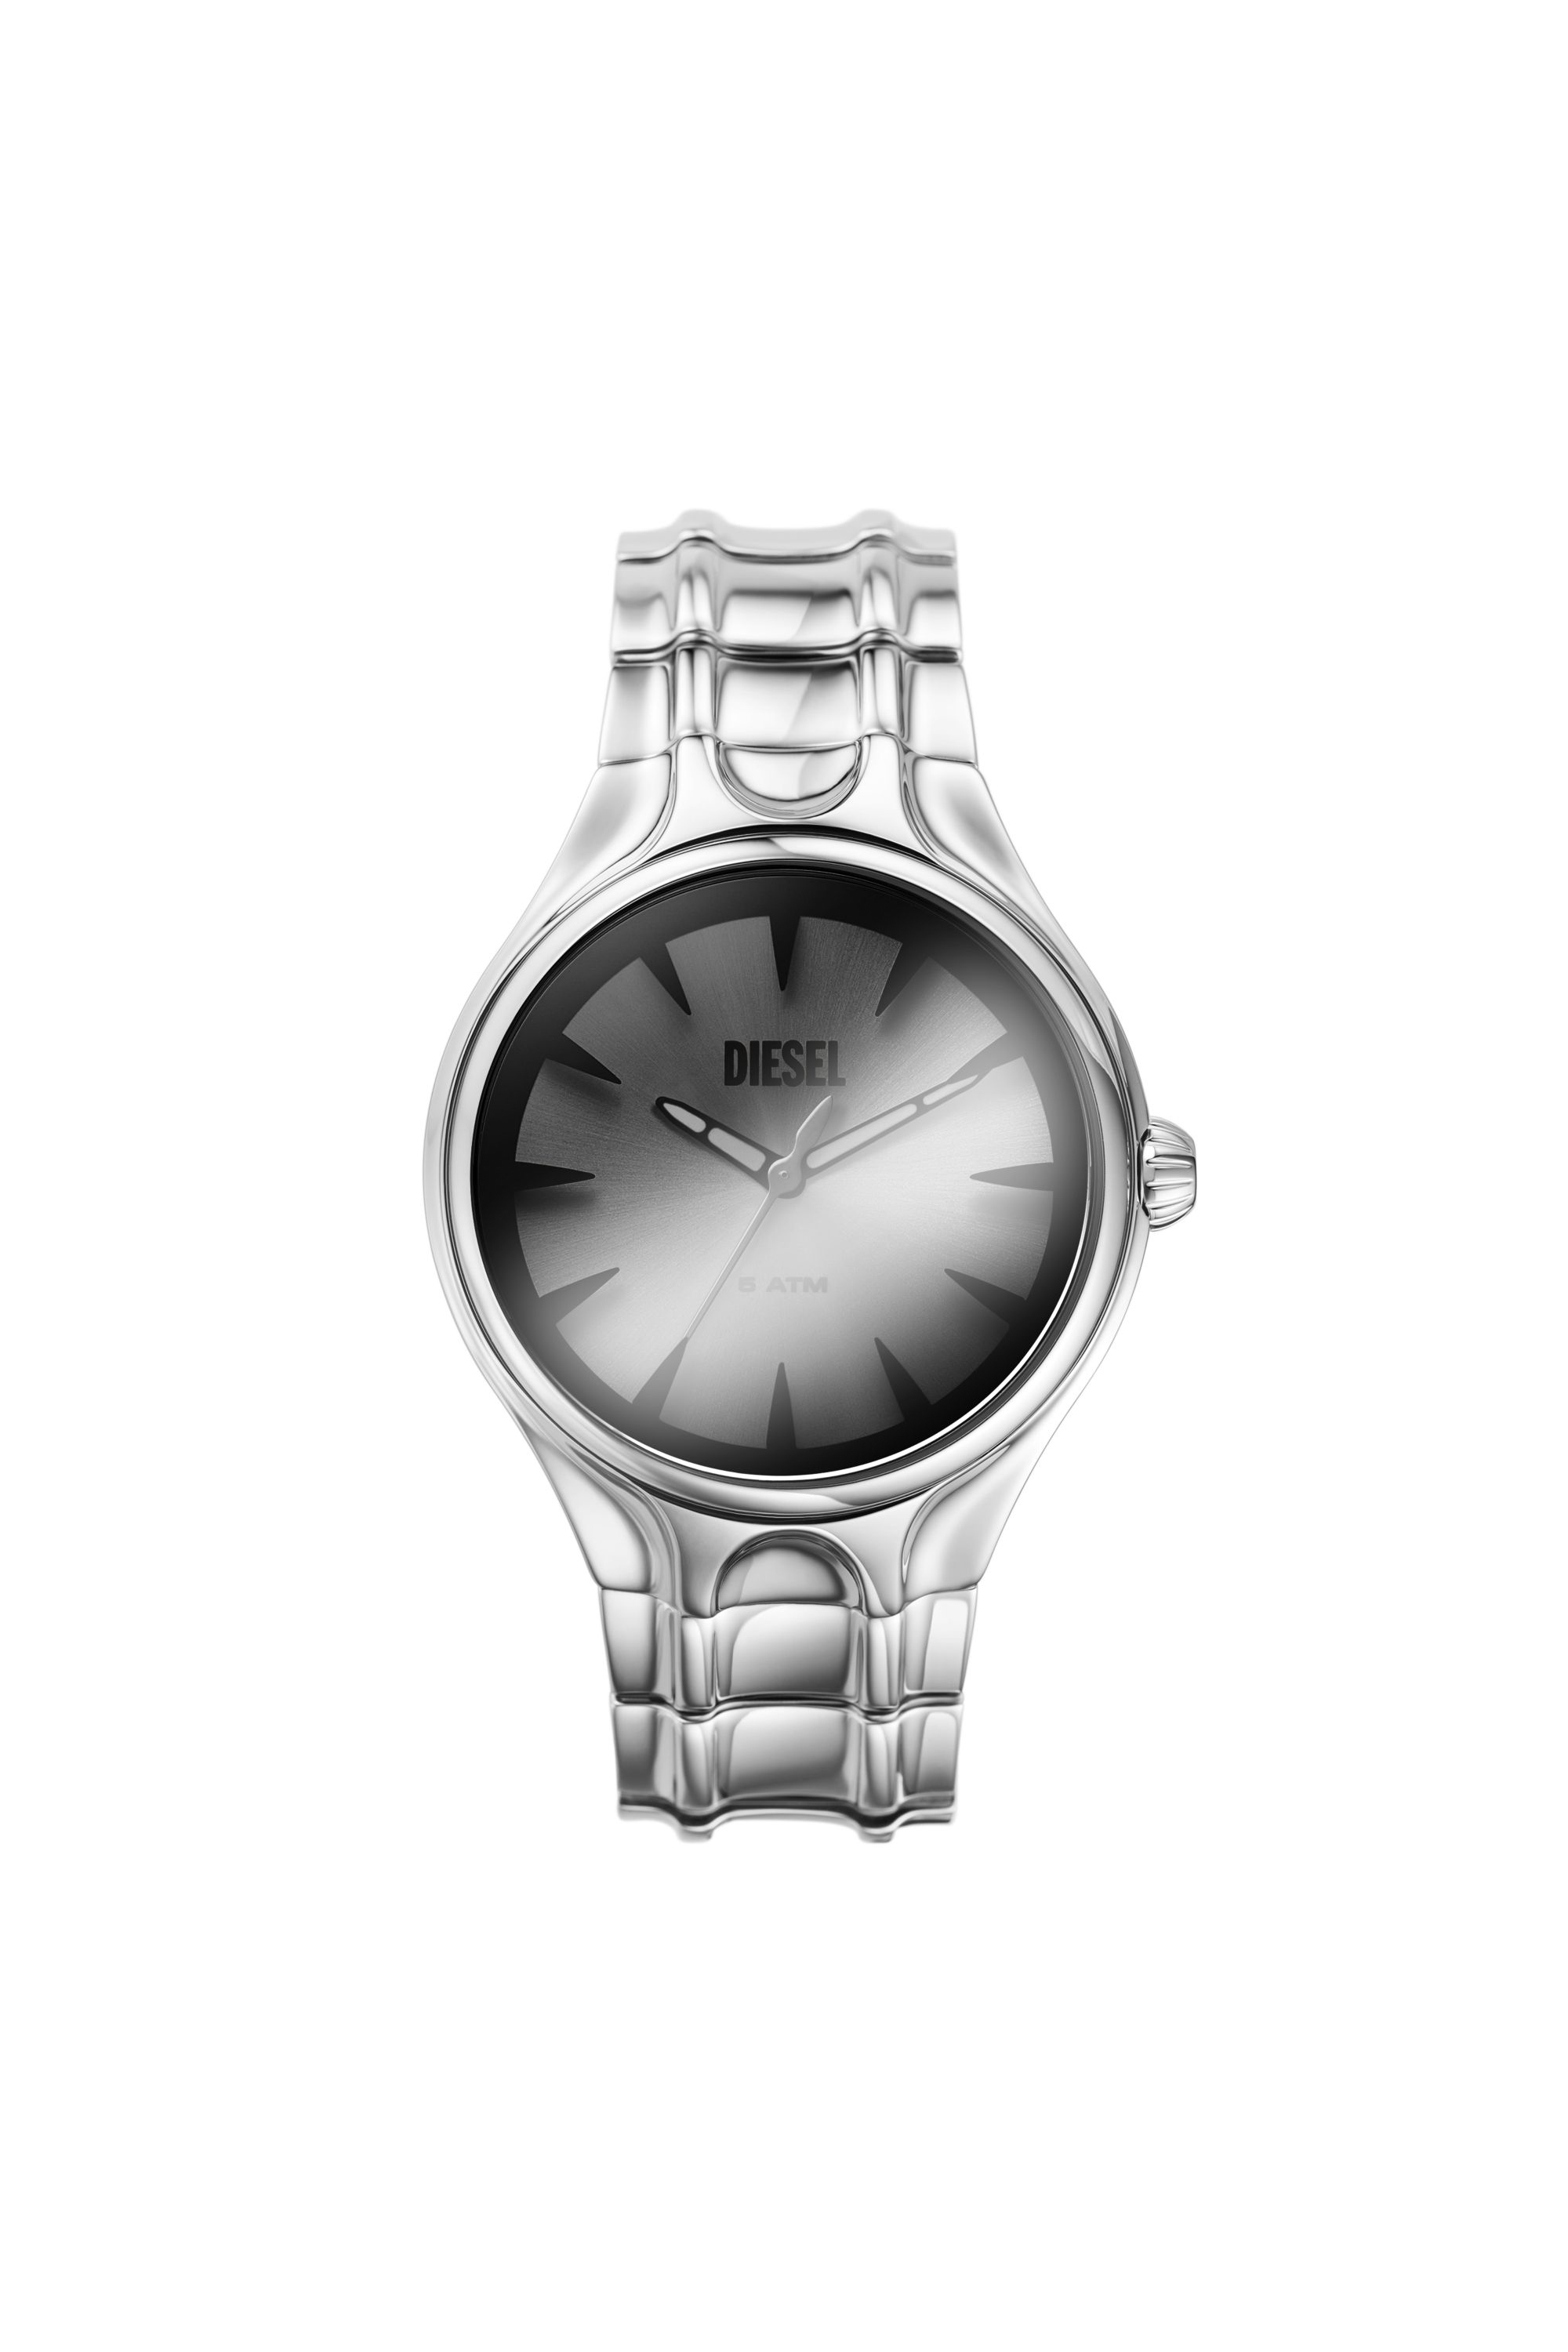 Diesel - DZ2205 WATCH, Man Streamline three-hand stainless steel watch in Silver - Image 1